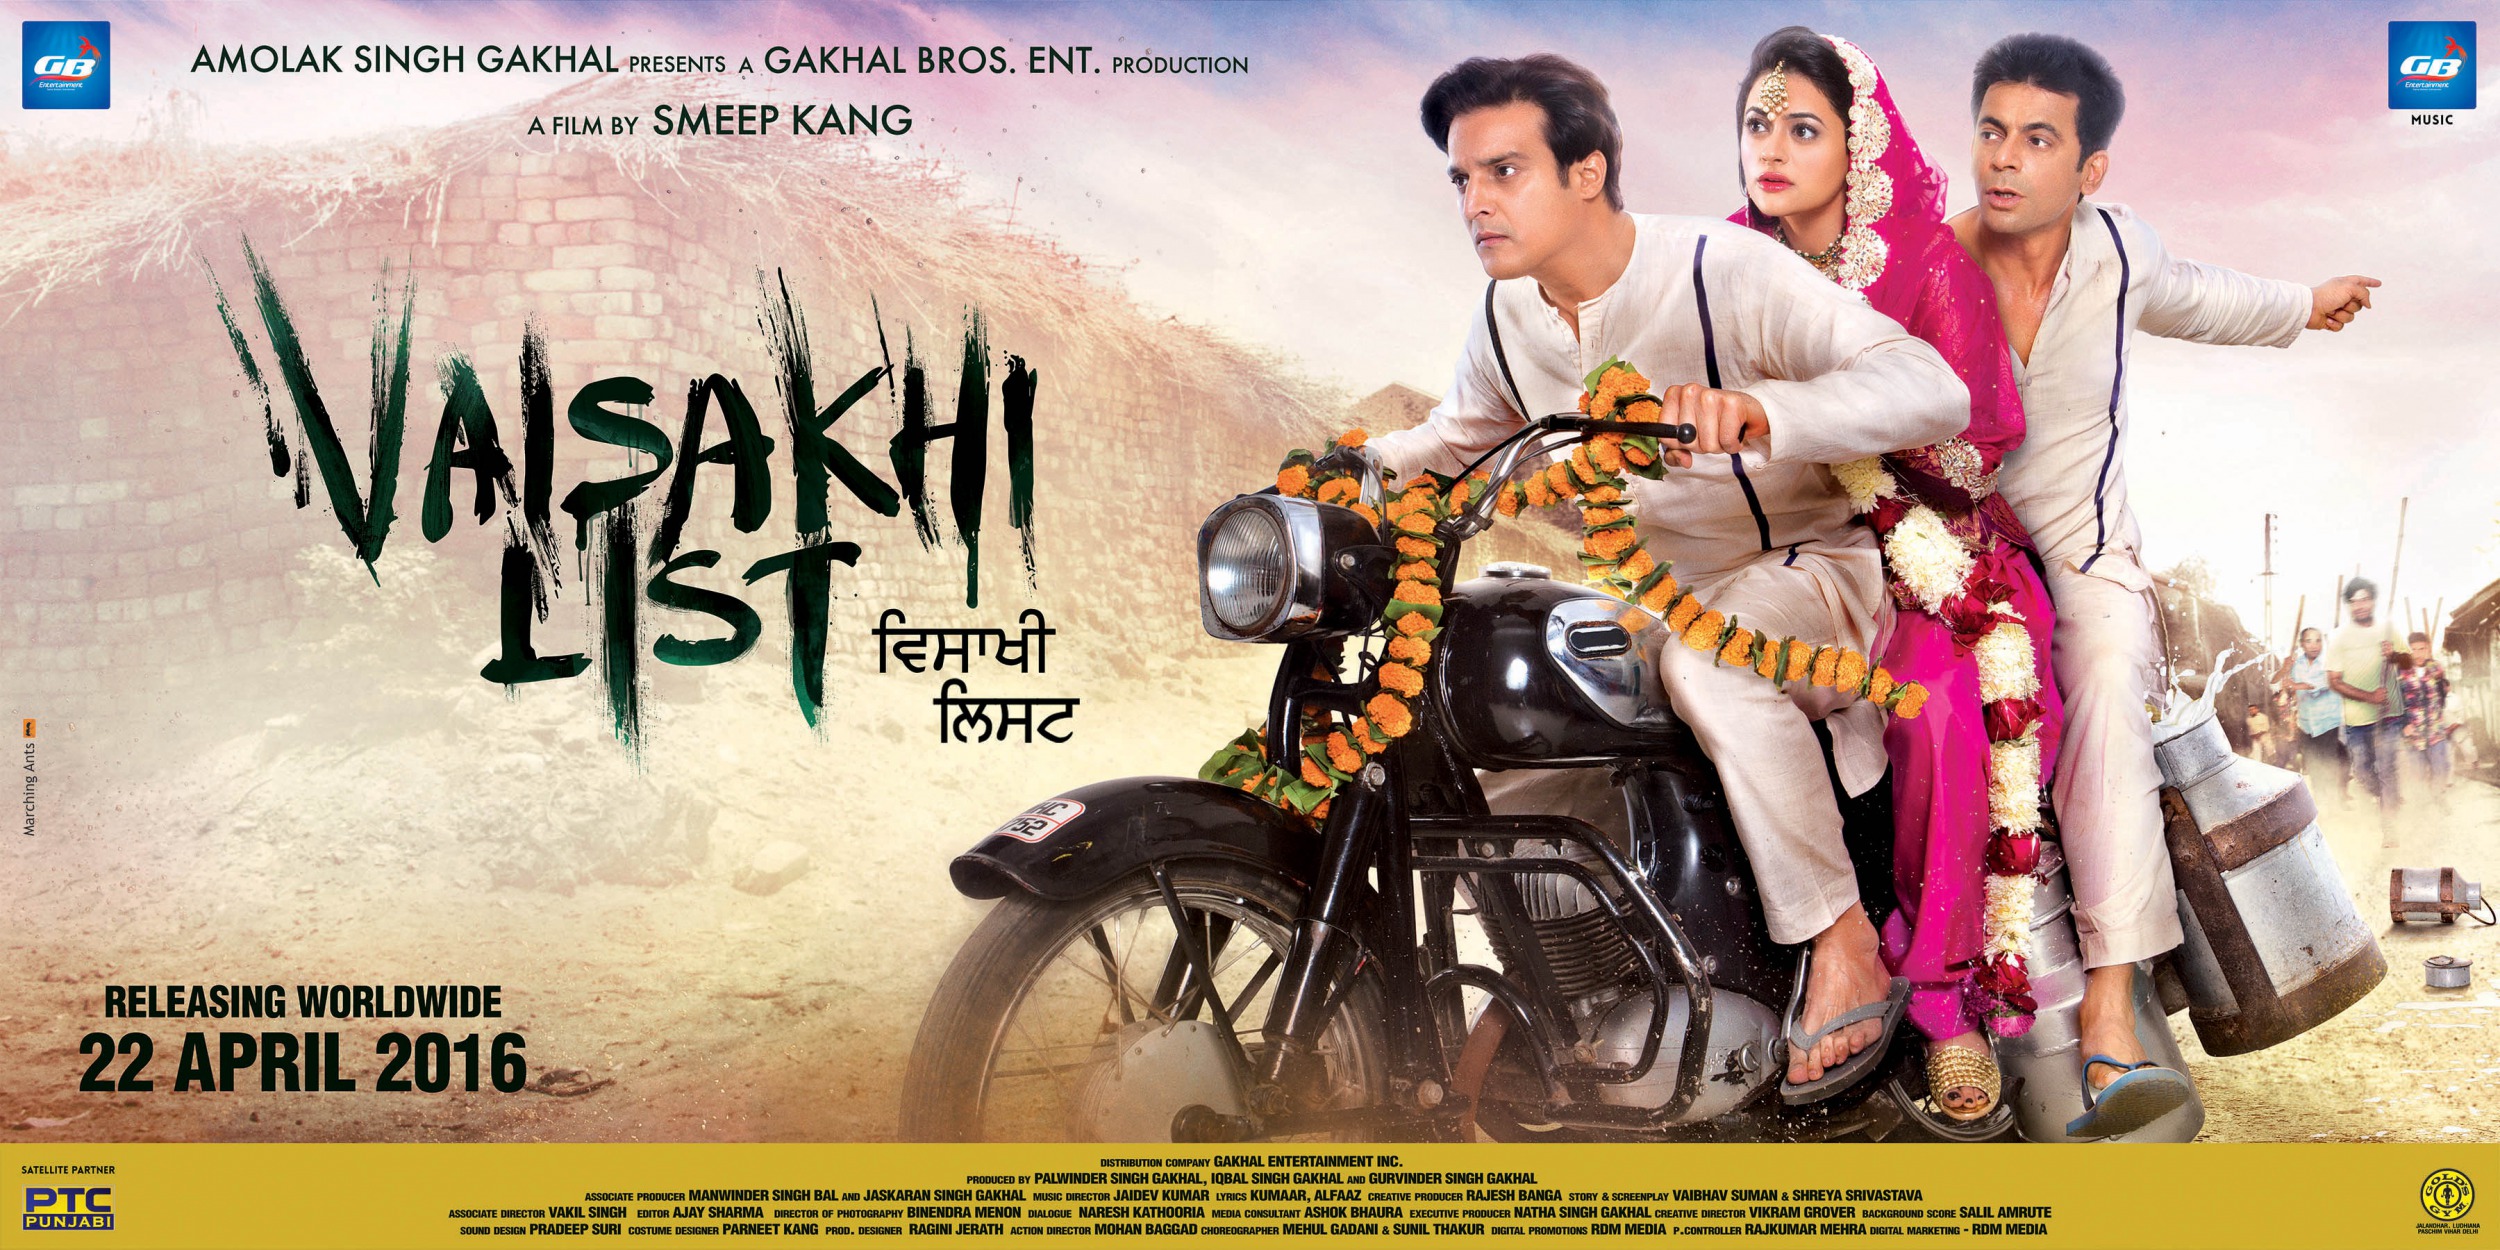 Vaisakhi List (1 of 6) Mega Sized Movie Poster Image IMP Awards